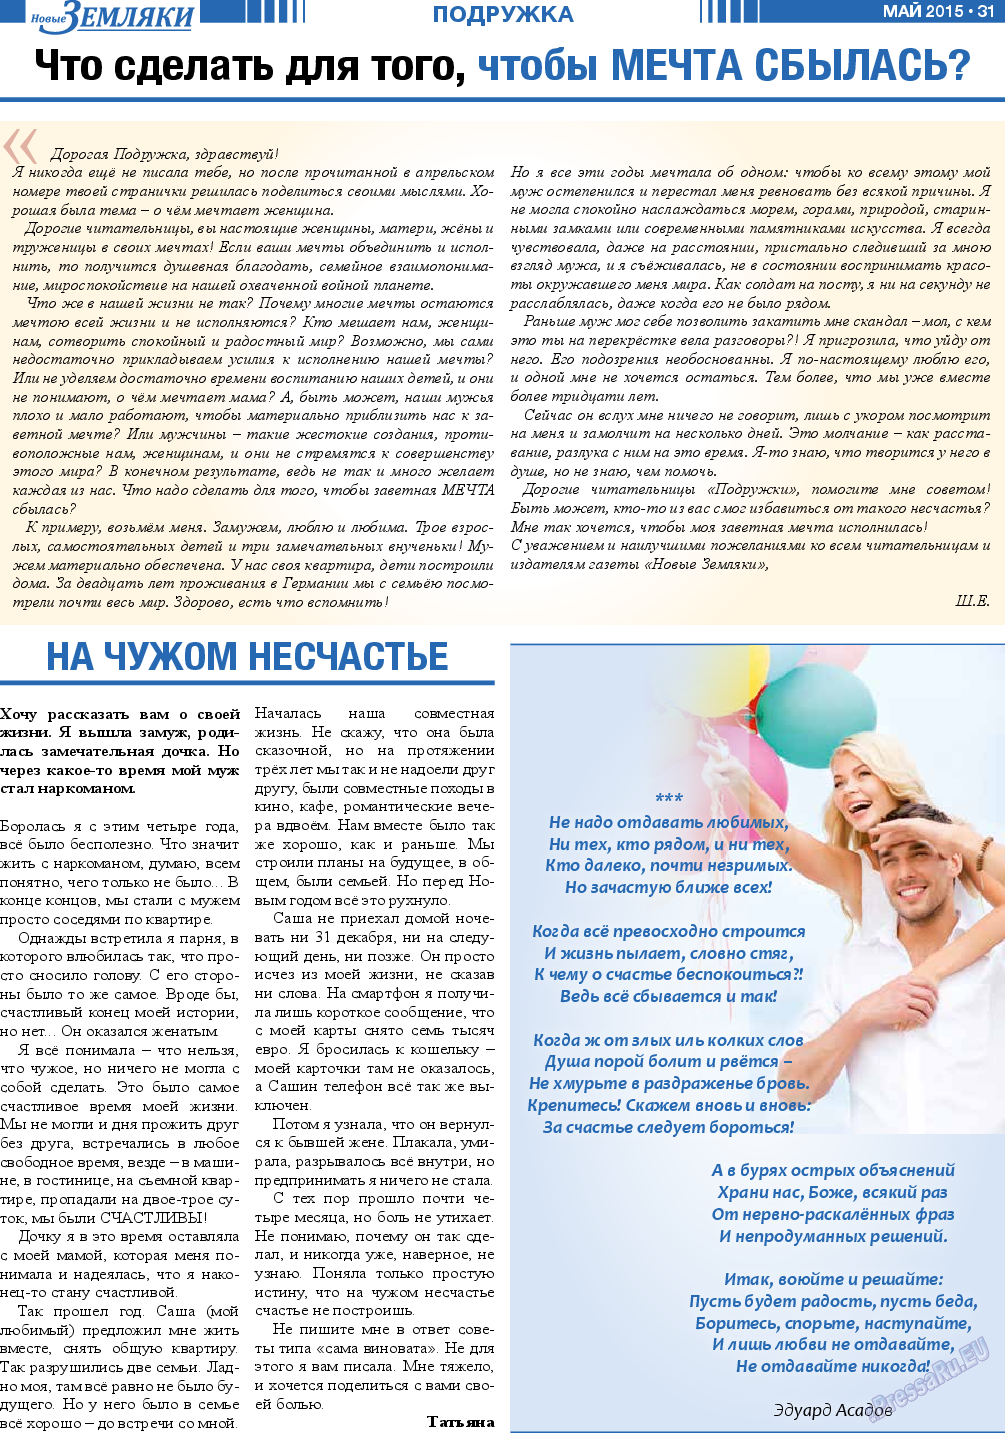 Новые Земляки, газета. 2015 №5 стр.31